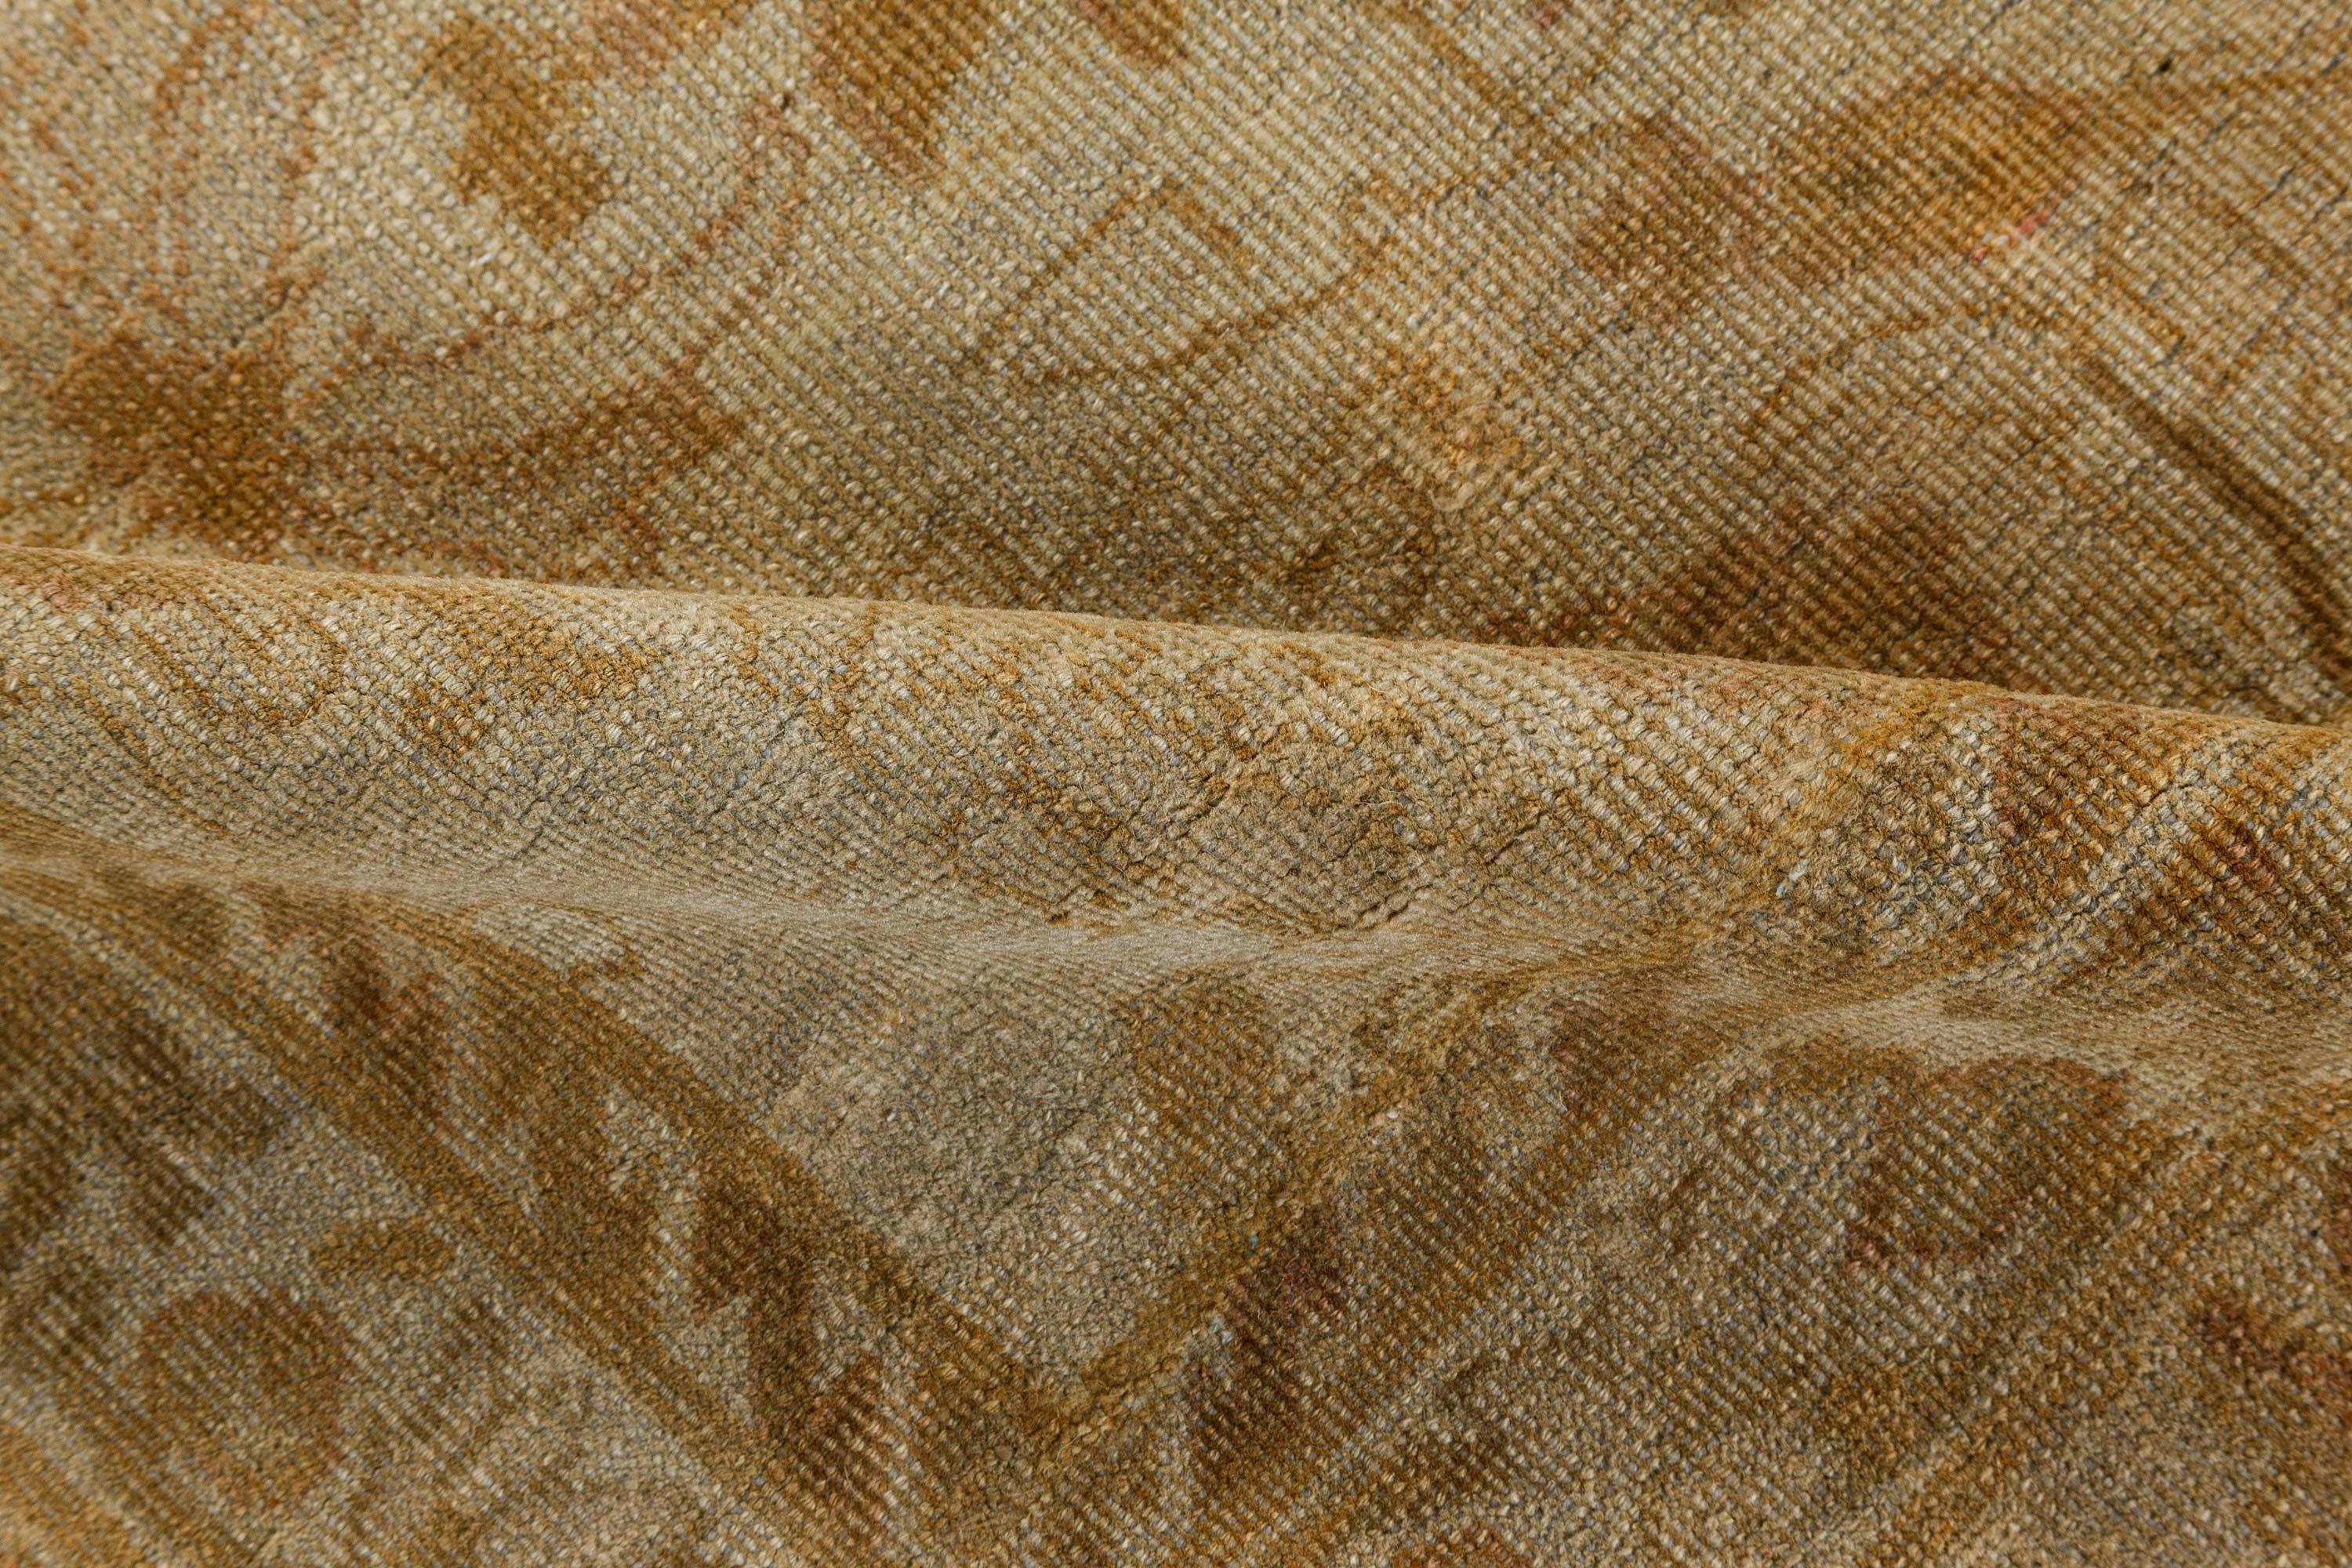 Antique Indian Amritsar botanic handmade wool carpet (size adjusted)
Size: 9'7